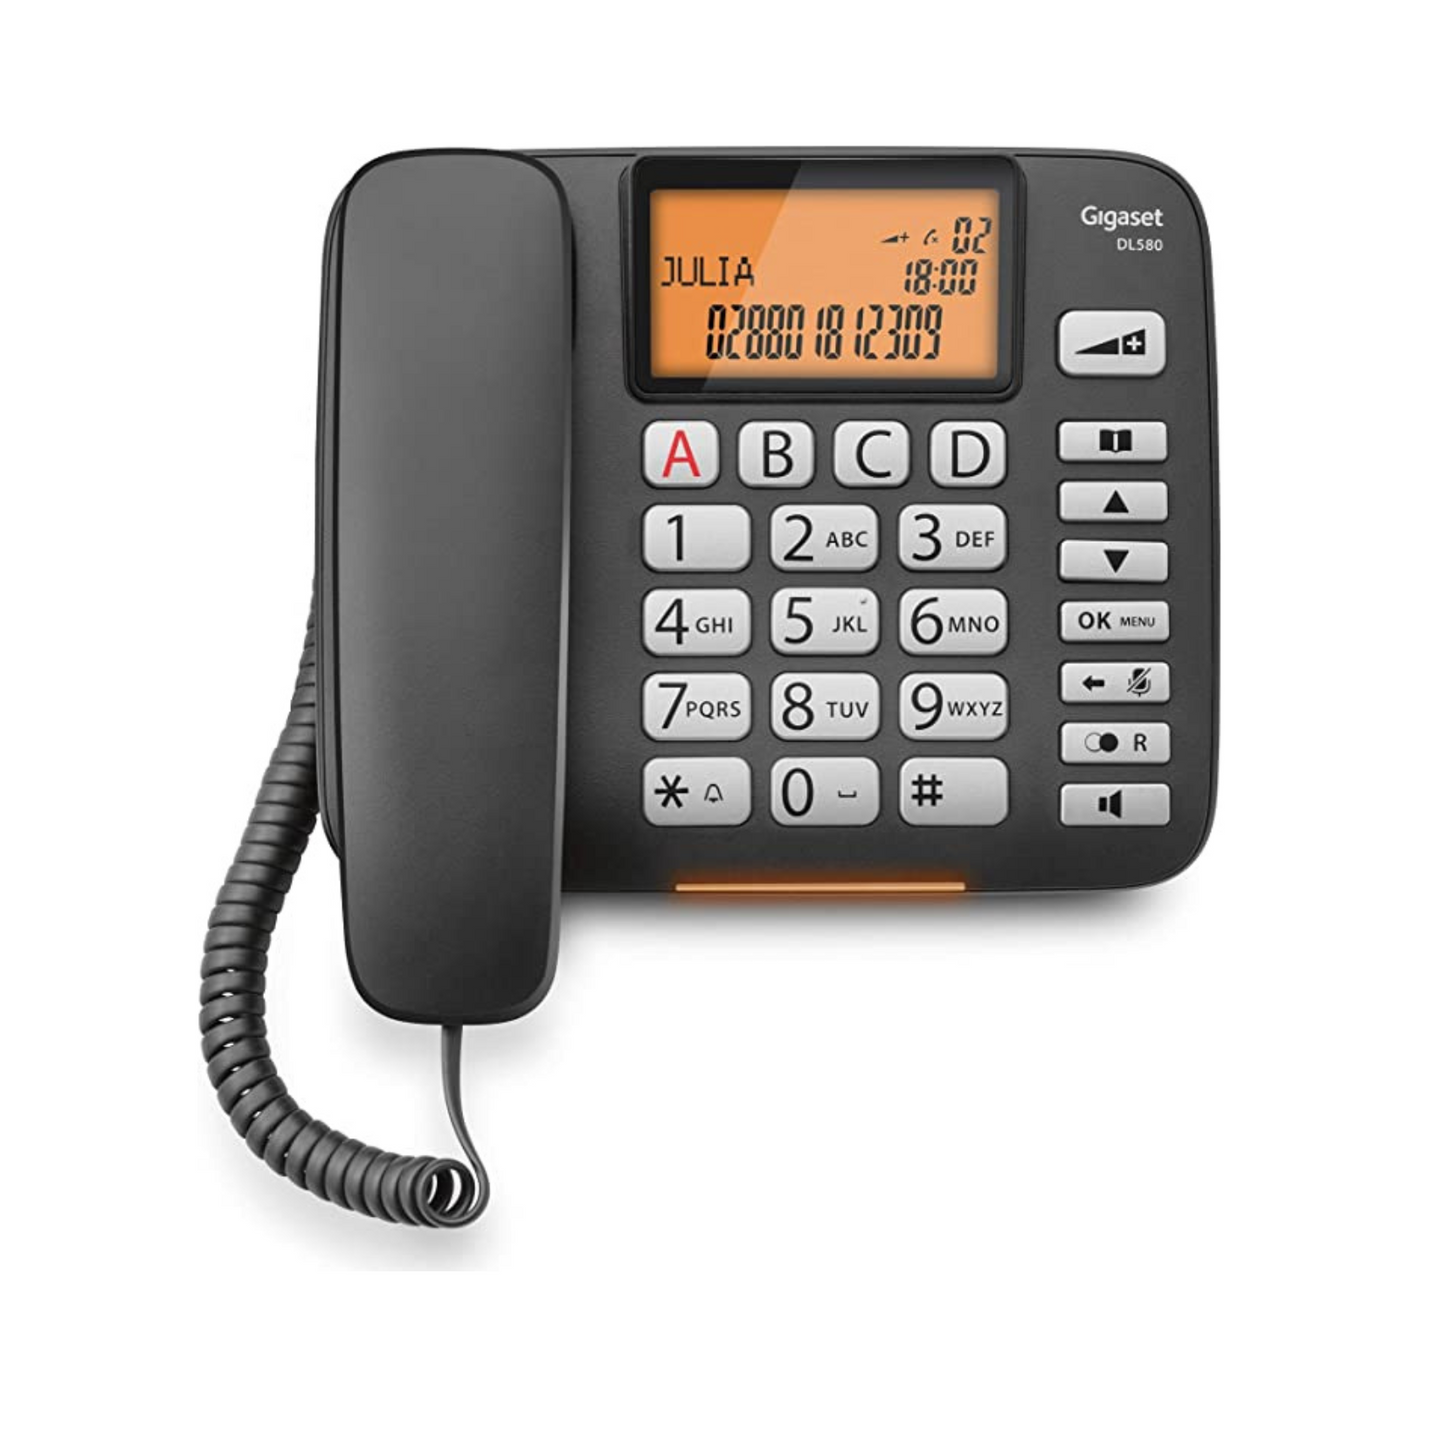 TELEFONO GIGASET DL580 NERO